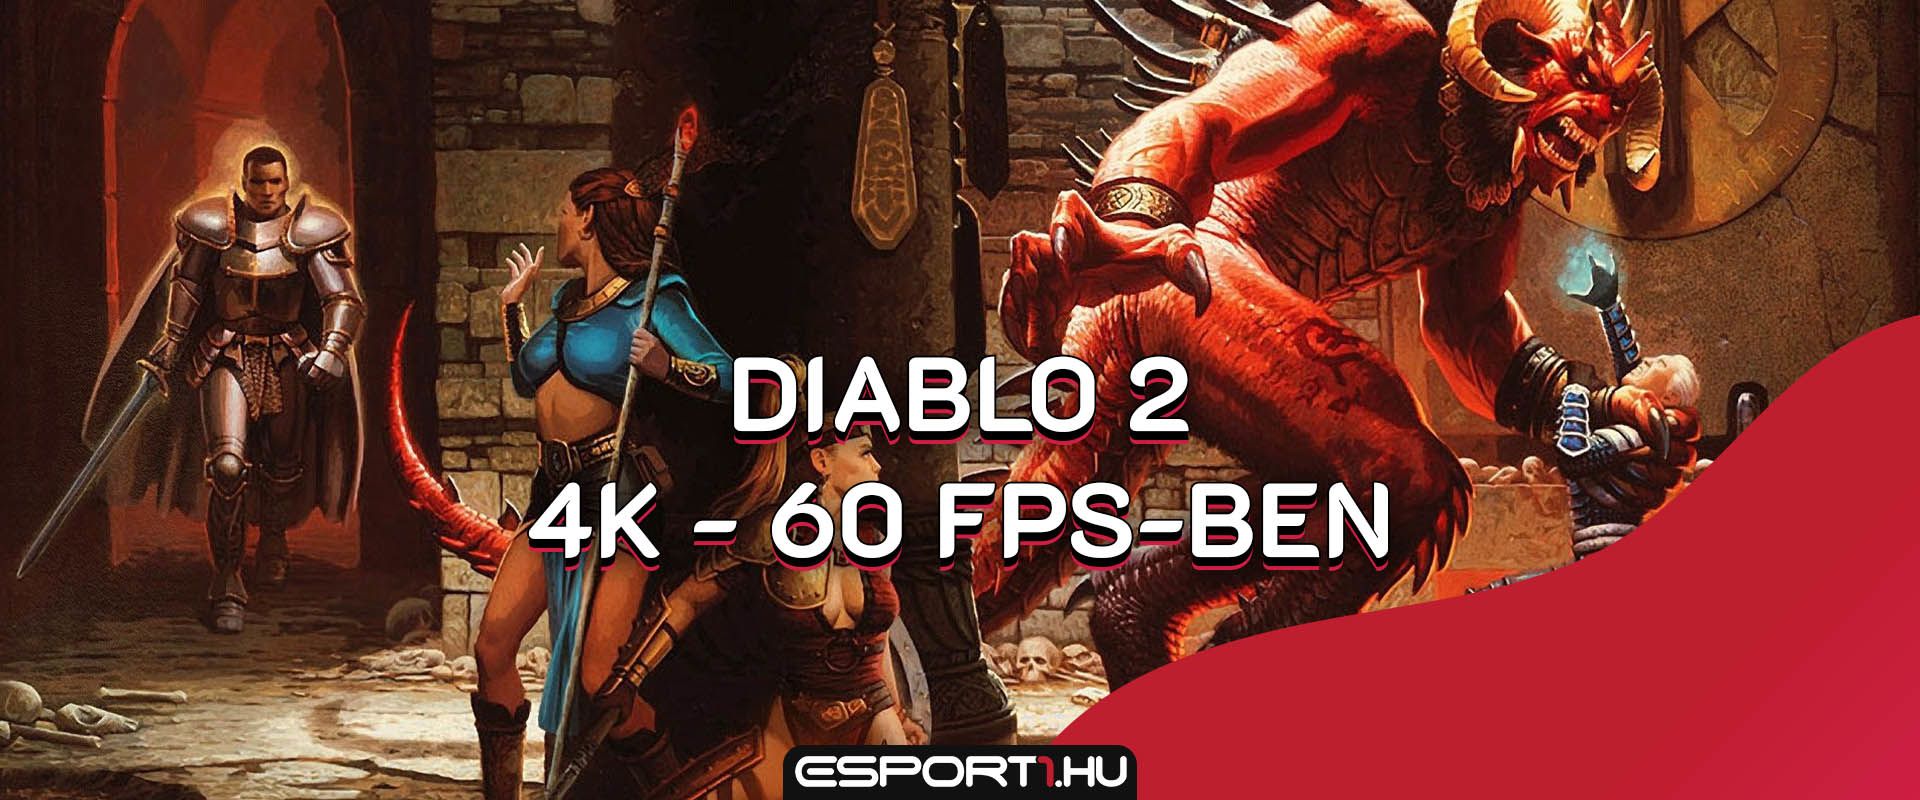 Így néz ki 4K - 60 FPS-ben a legendás Diablo II